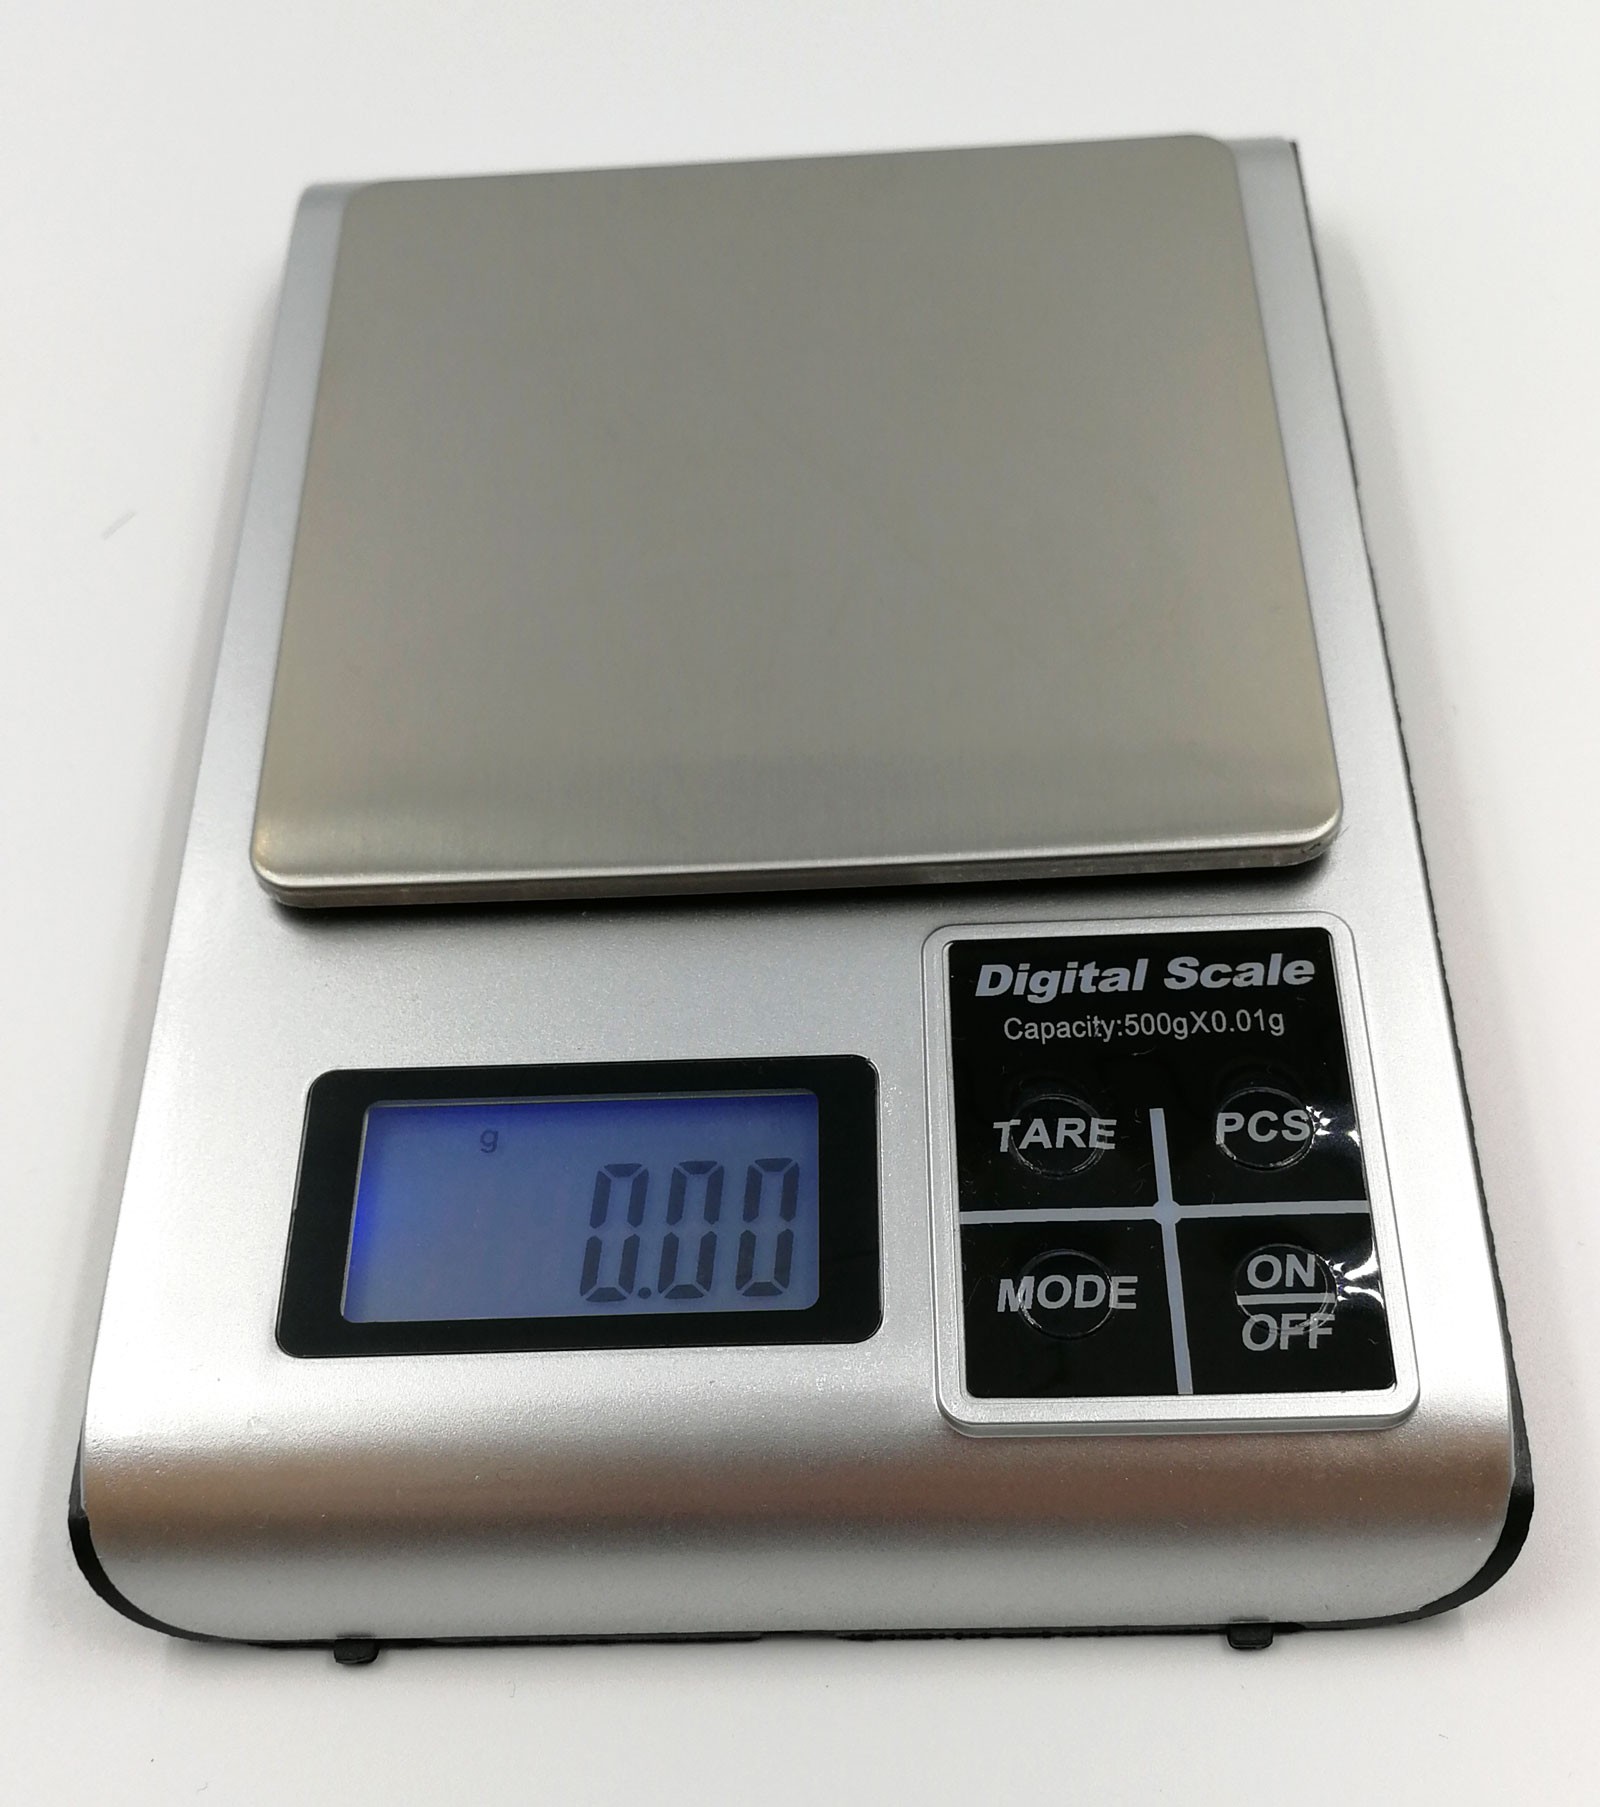 KM-500 digitální váha do 500g / 0,01 g